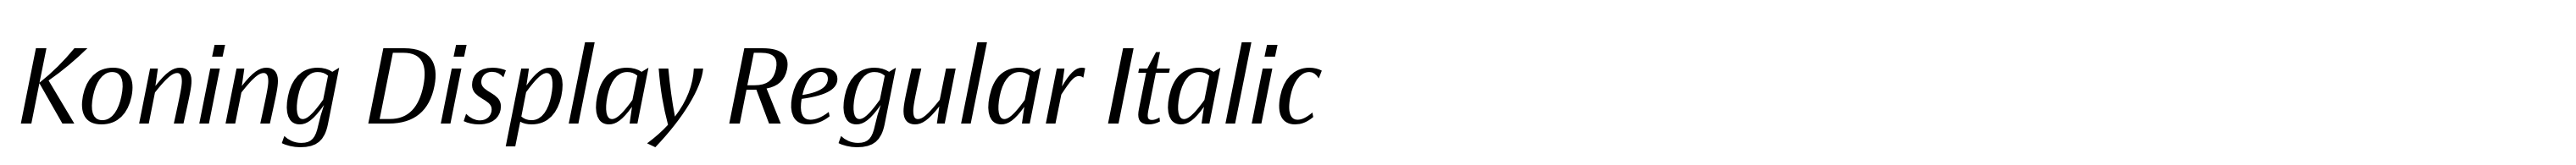 Koning Display Regular Italic